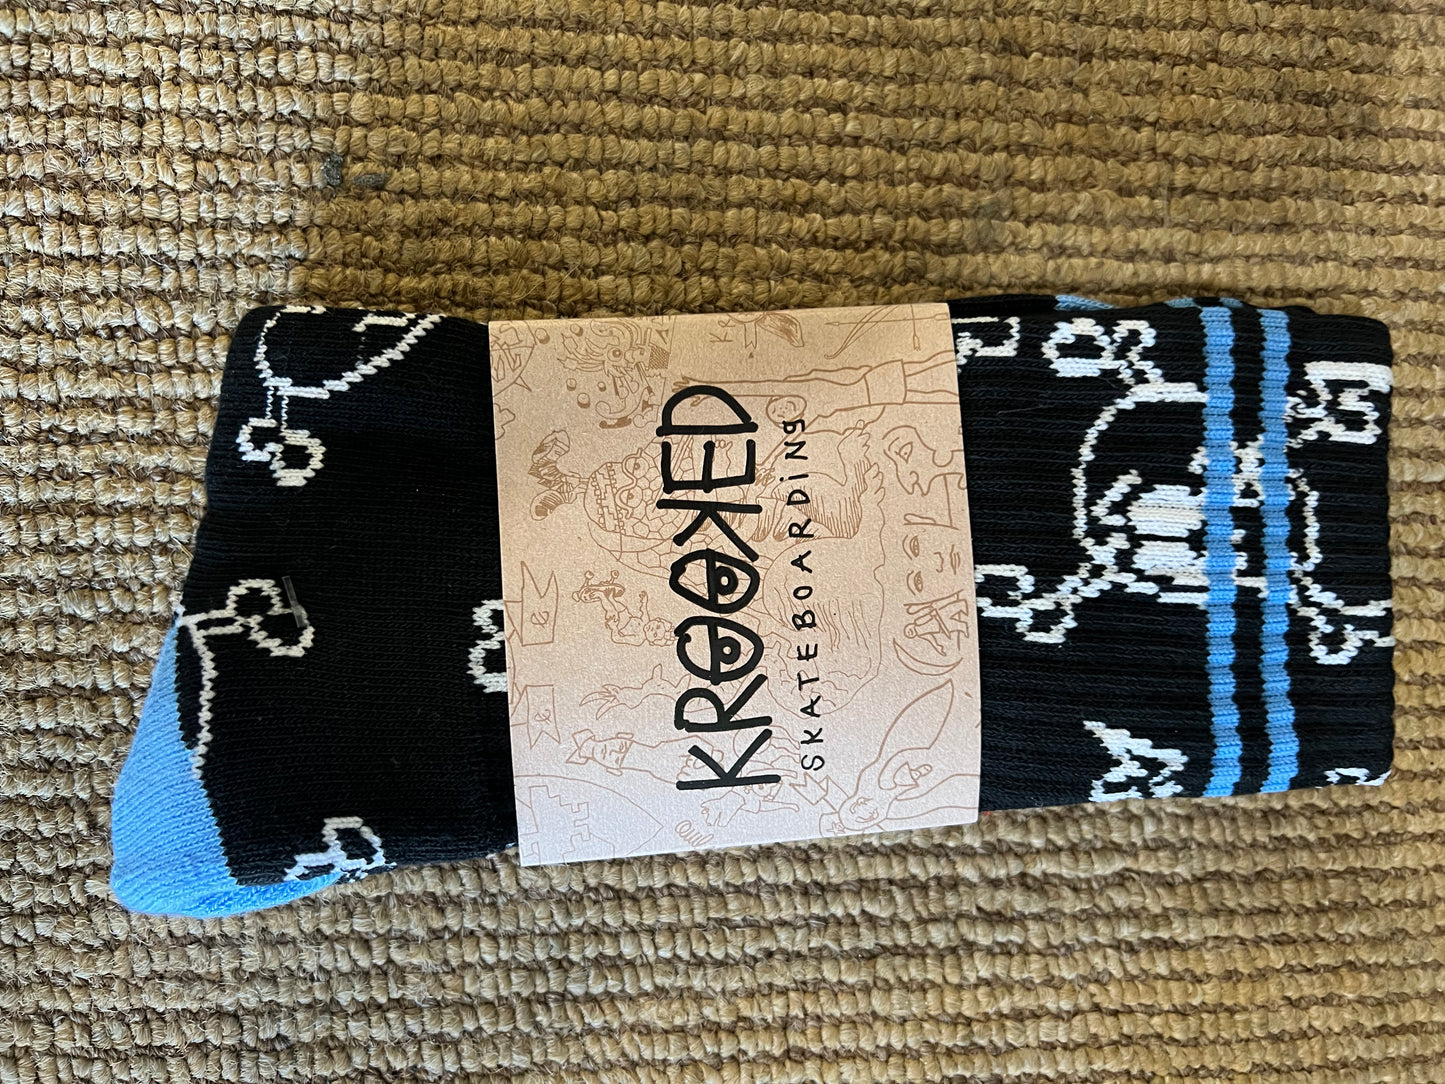 Krooked Style Socks